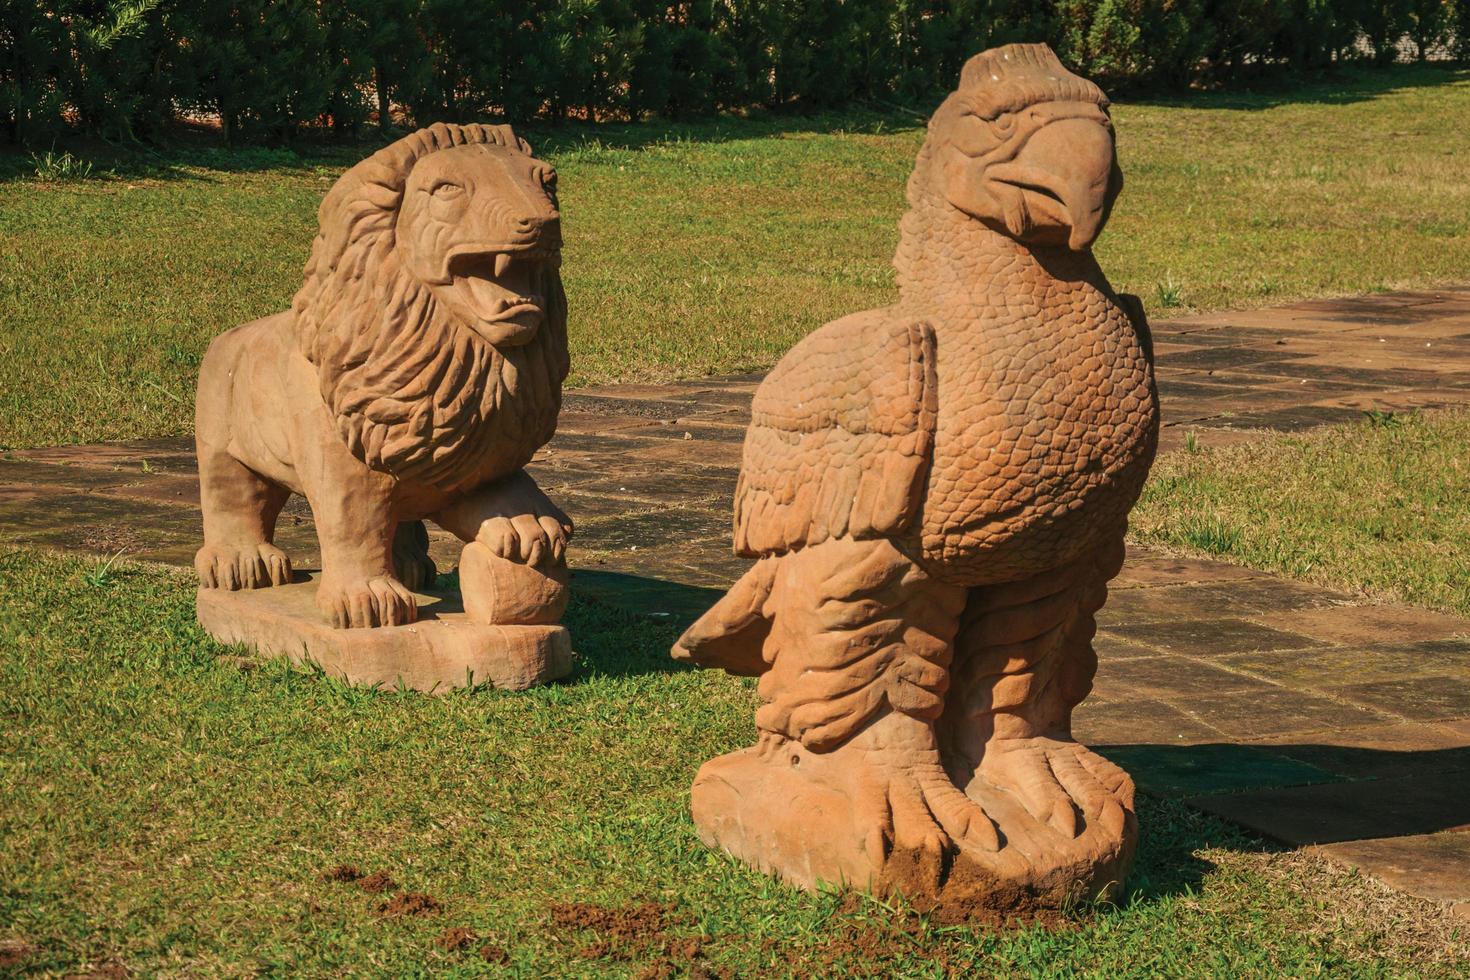 nova petropolis, Brasilien - 20 juli 2019. sandstensskulpturer av ett lejon och en örn i skulpturparken, tystnadens stenar nära nova petropolis. en härlig lantlig stad grundad av tyska invandrare. foto